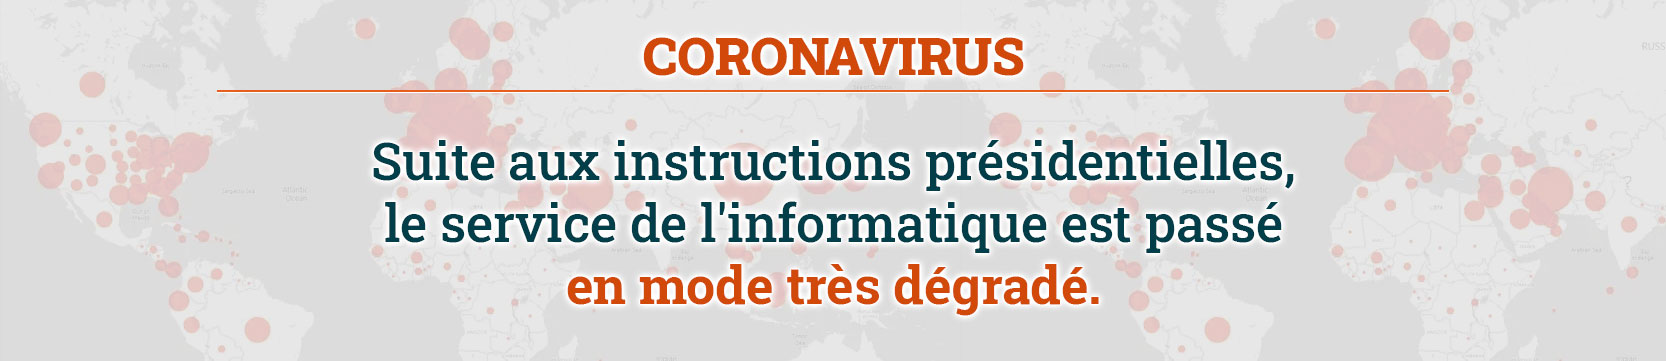 Coronavirus Suite aux instructions présidentielles, le service de l'informatique est passé en mode très dégradé.